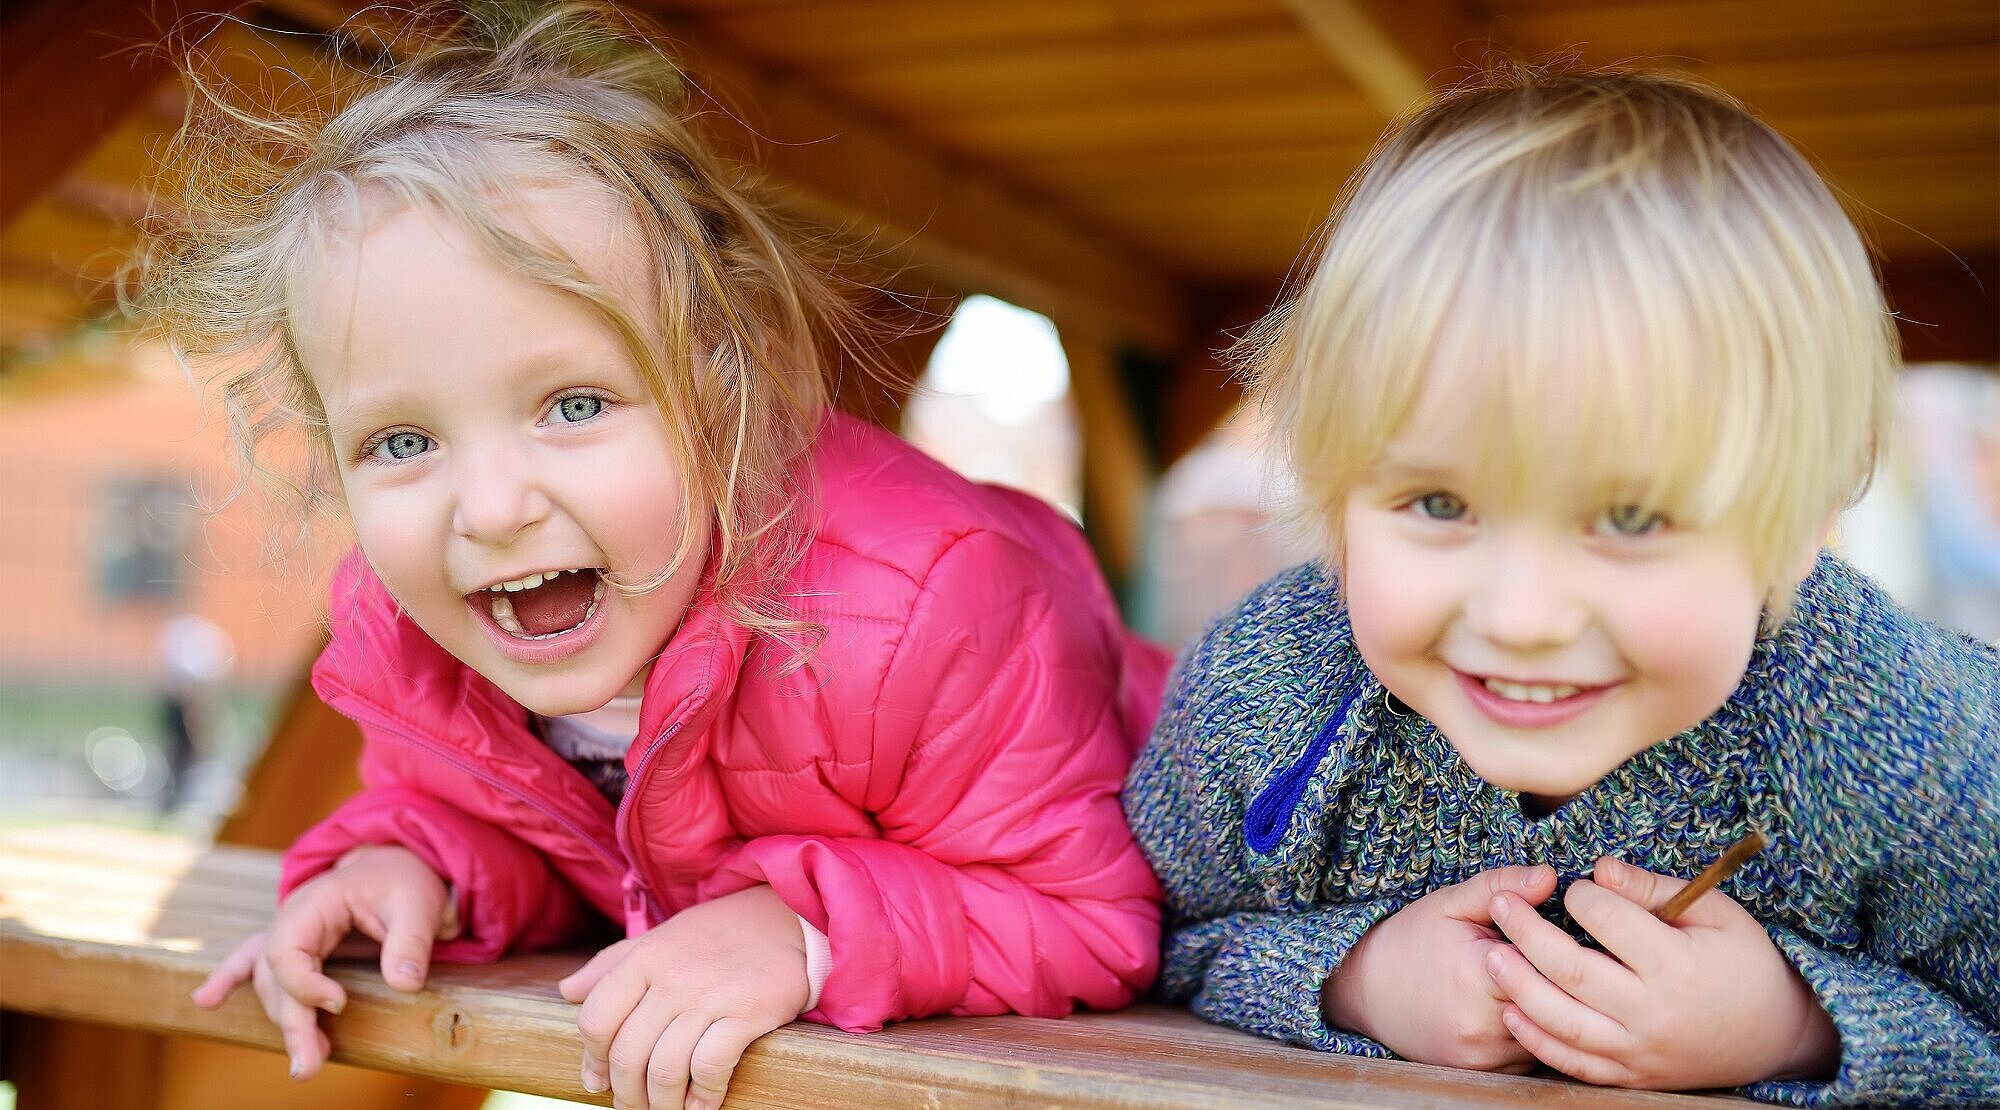 Foto: Zwei kleine Kinder schauen lachend aus einem Holzgerüst auf einem Spielplatz